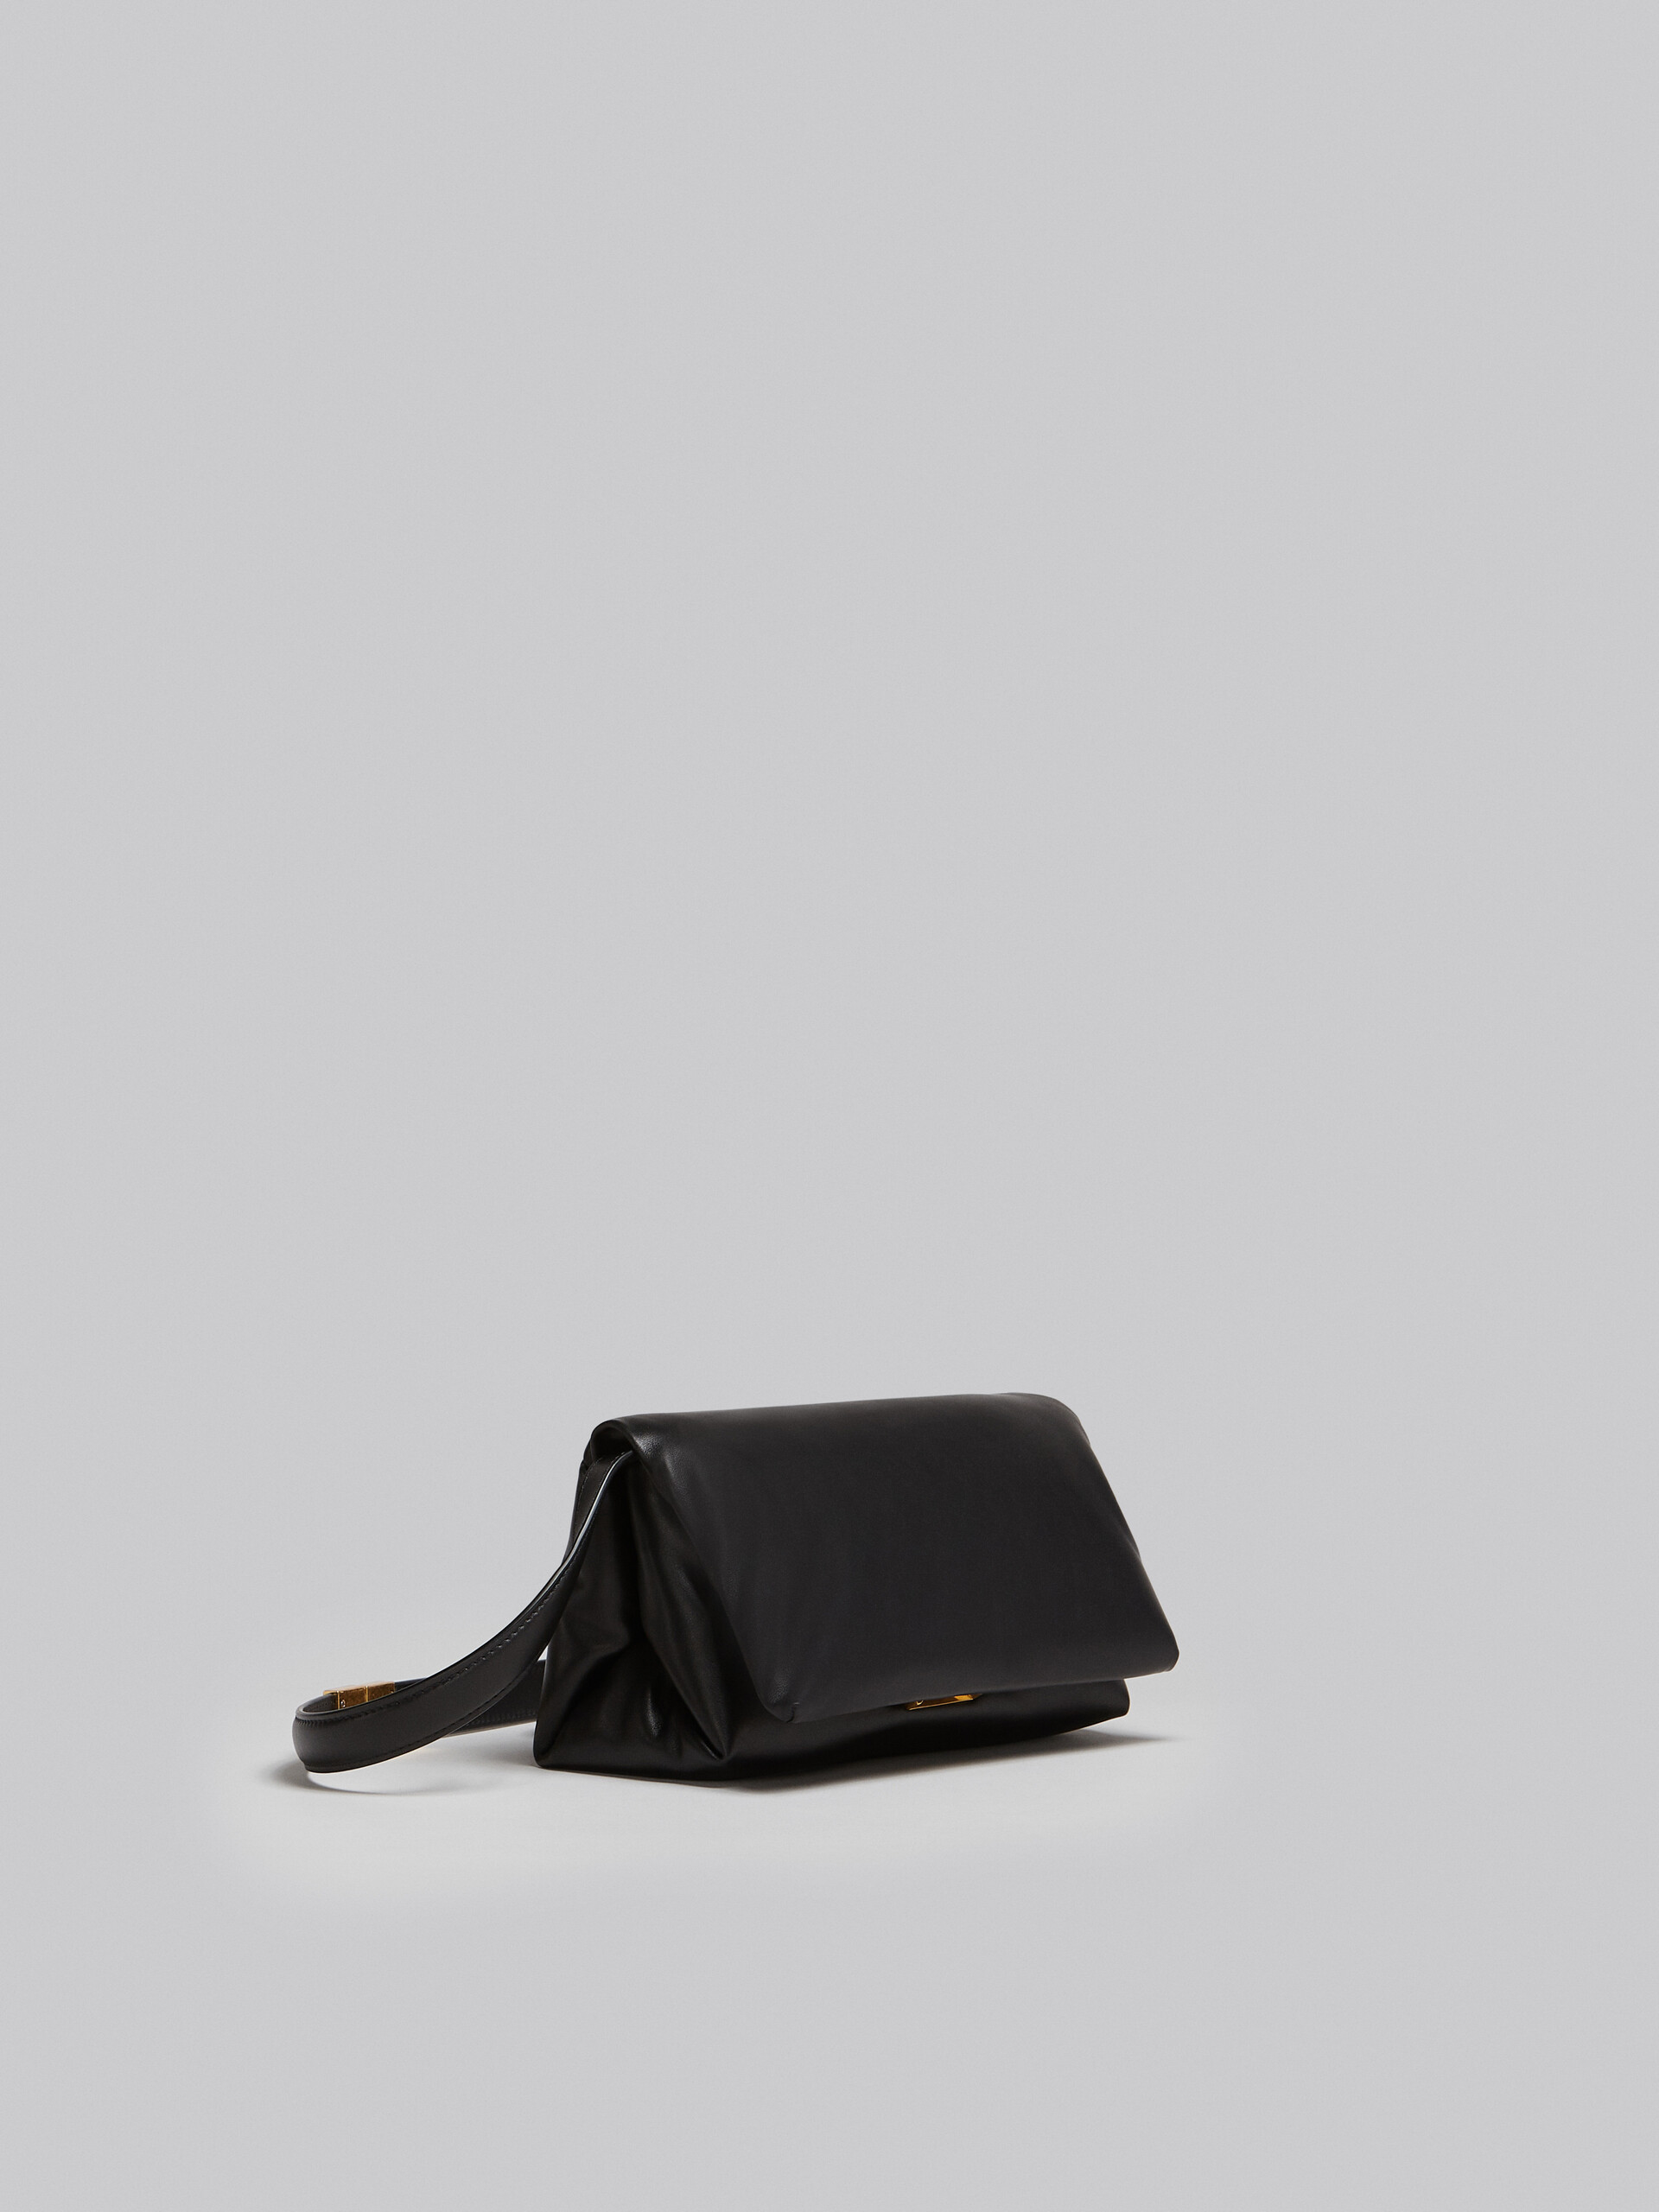 Small black calsfkin Prisma bag - Shoulder Bag - Image 6